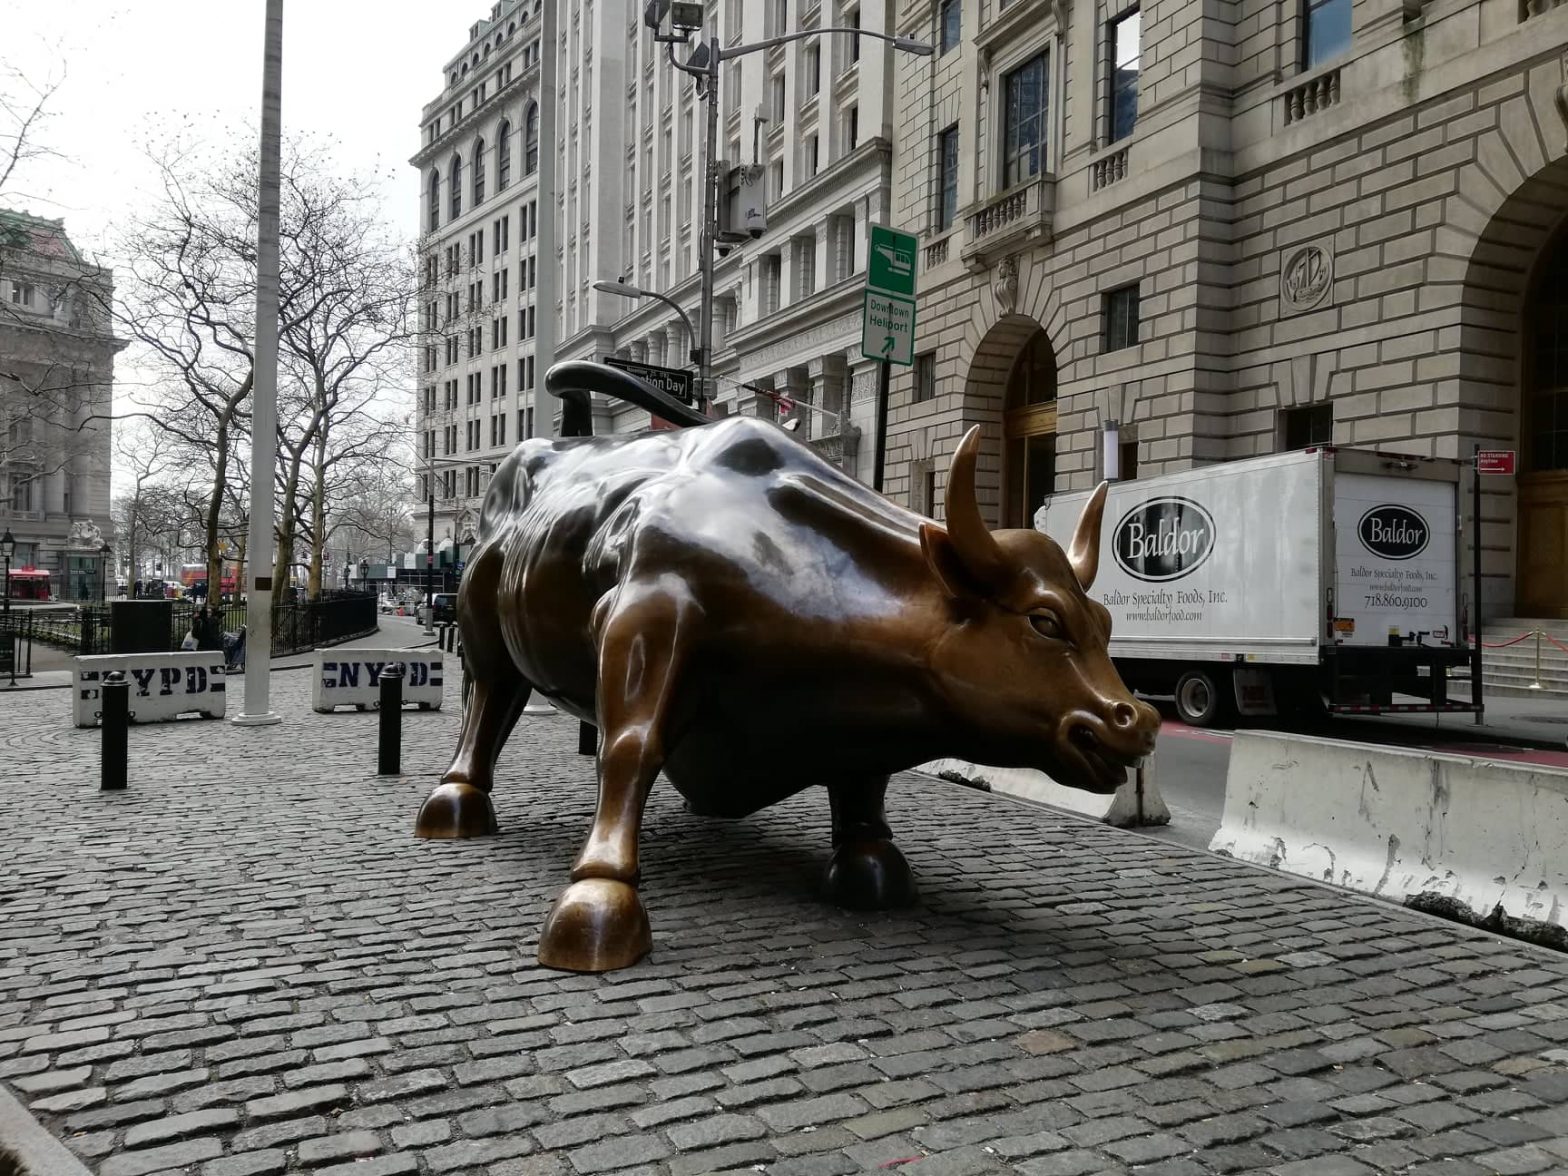 Toro di Wall Street - Charging Bull